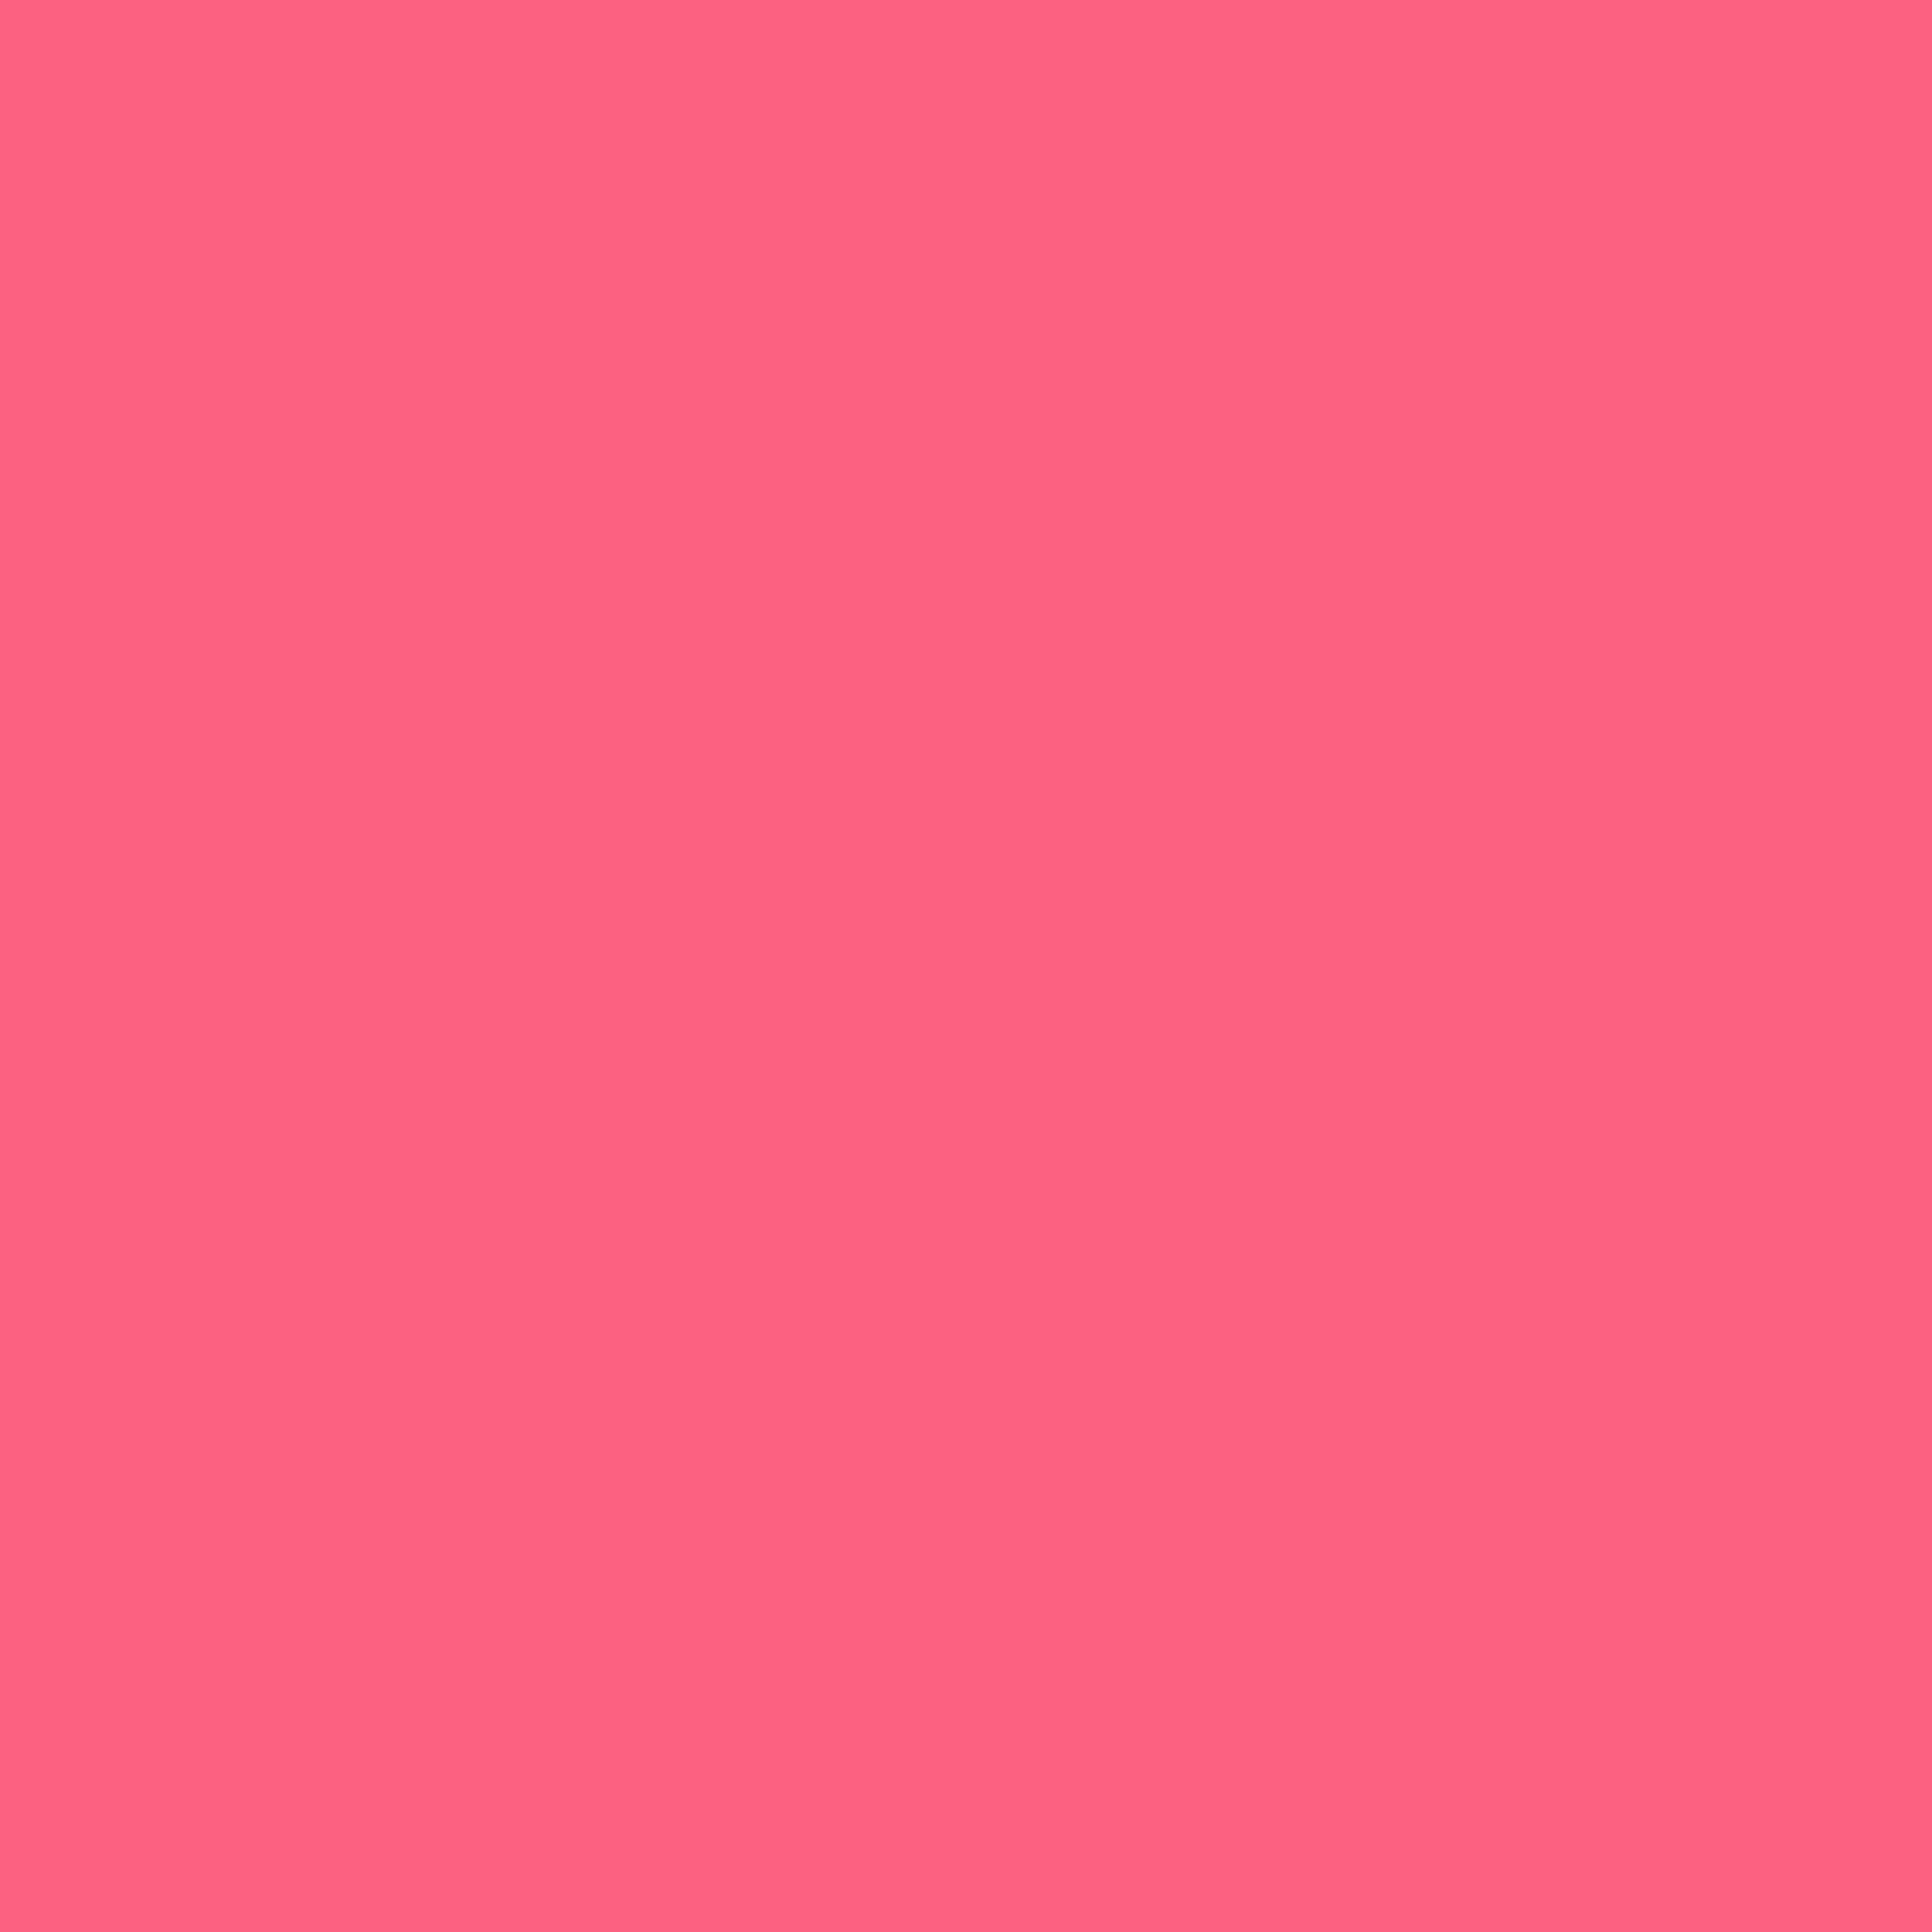 2732x2732 Brink Pink Solid Color Background